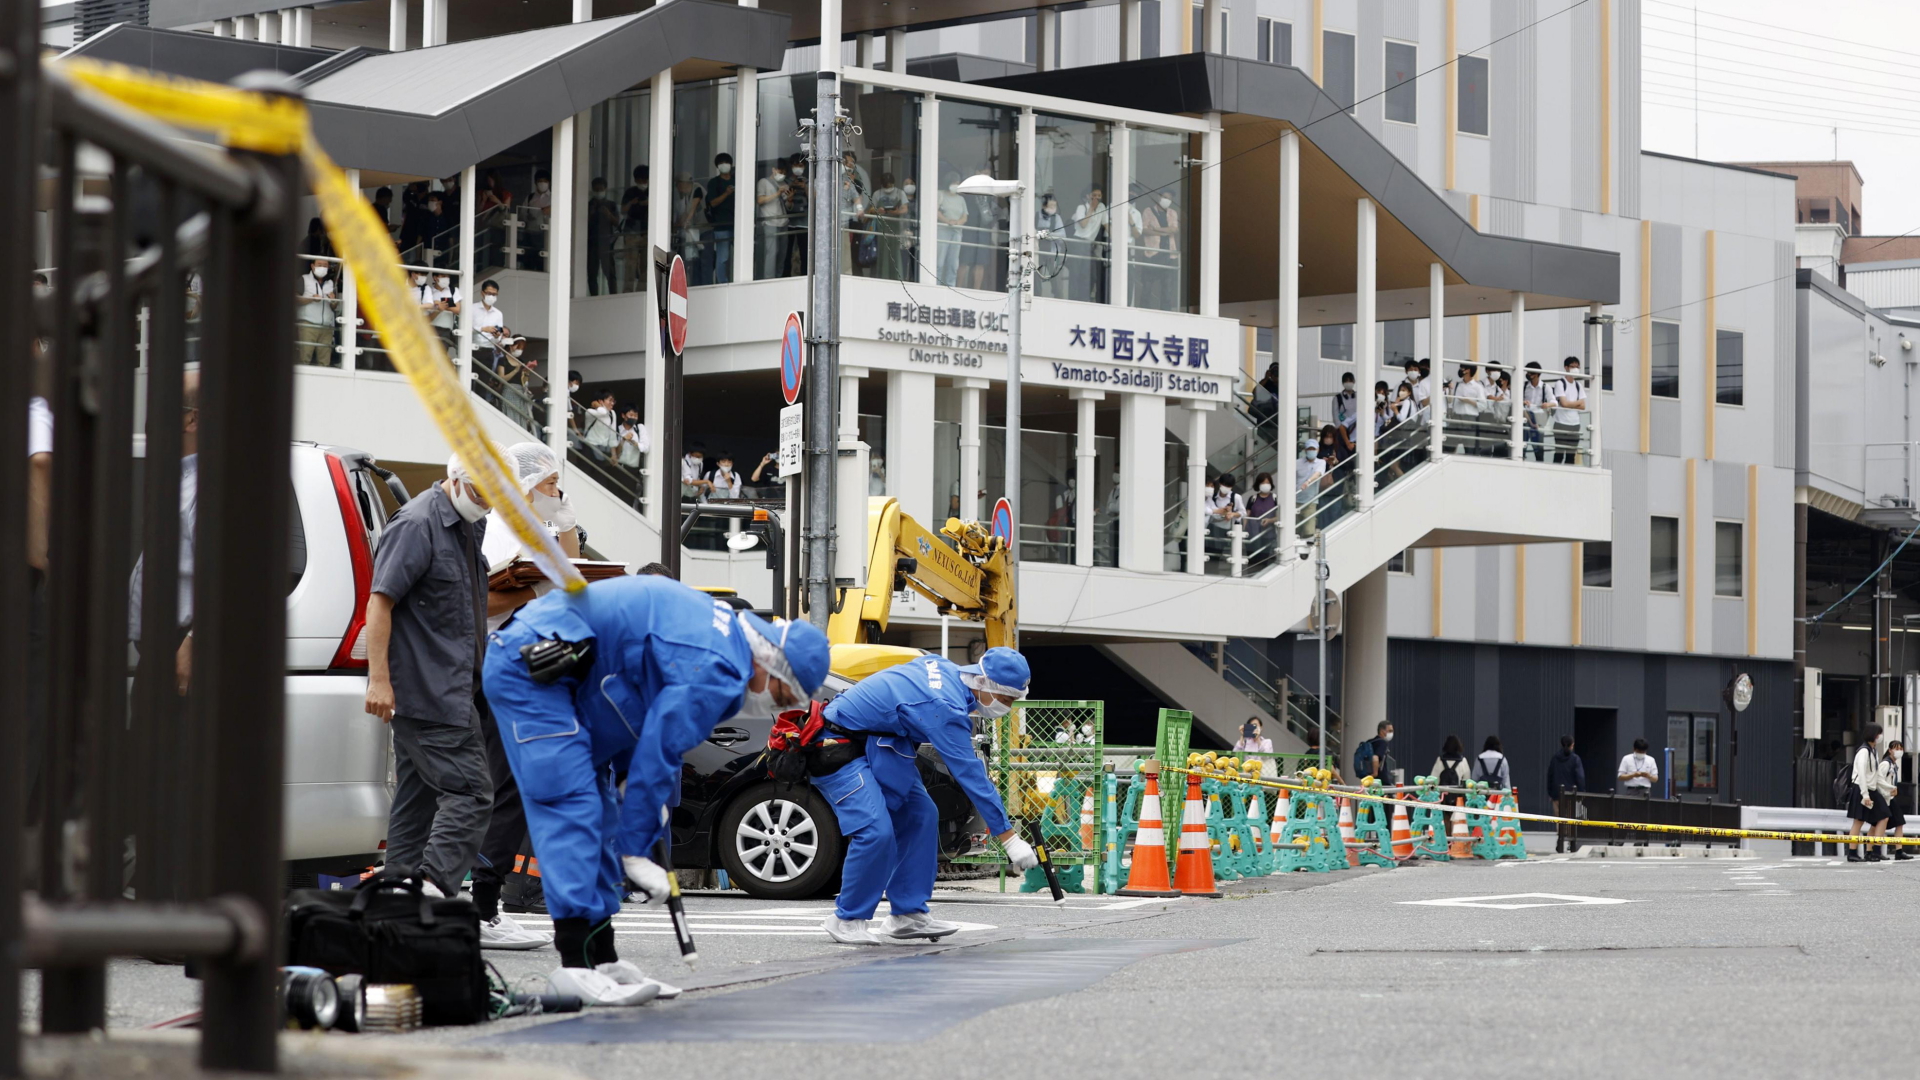 Polizisten in blauen Schutzanzügen sichern Spuren auf einer Straße in Nara - dem Ort, an dem ein Anschlag auf den früheren Premier Abe verübt wurde. | dpa